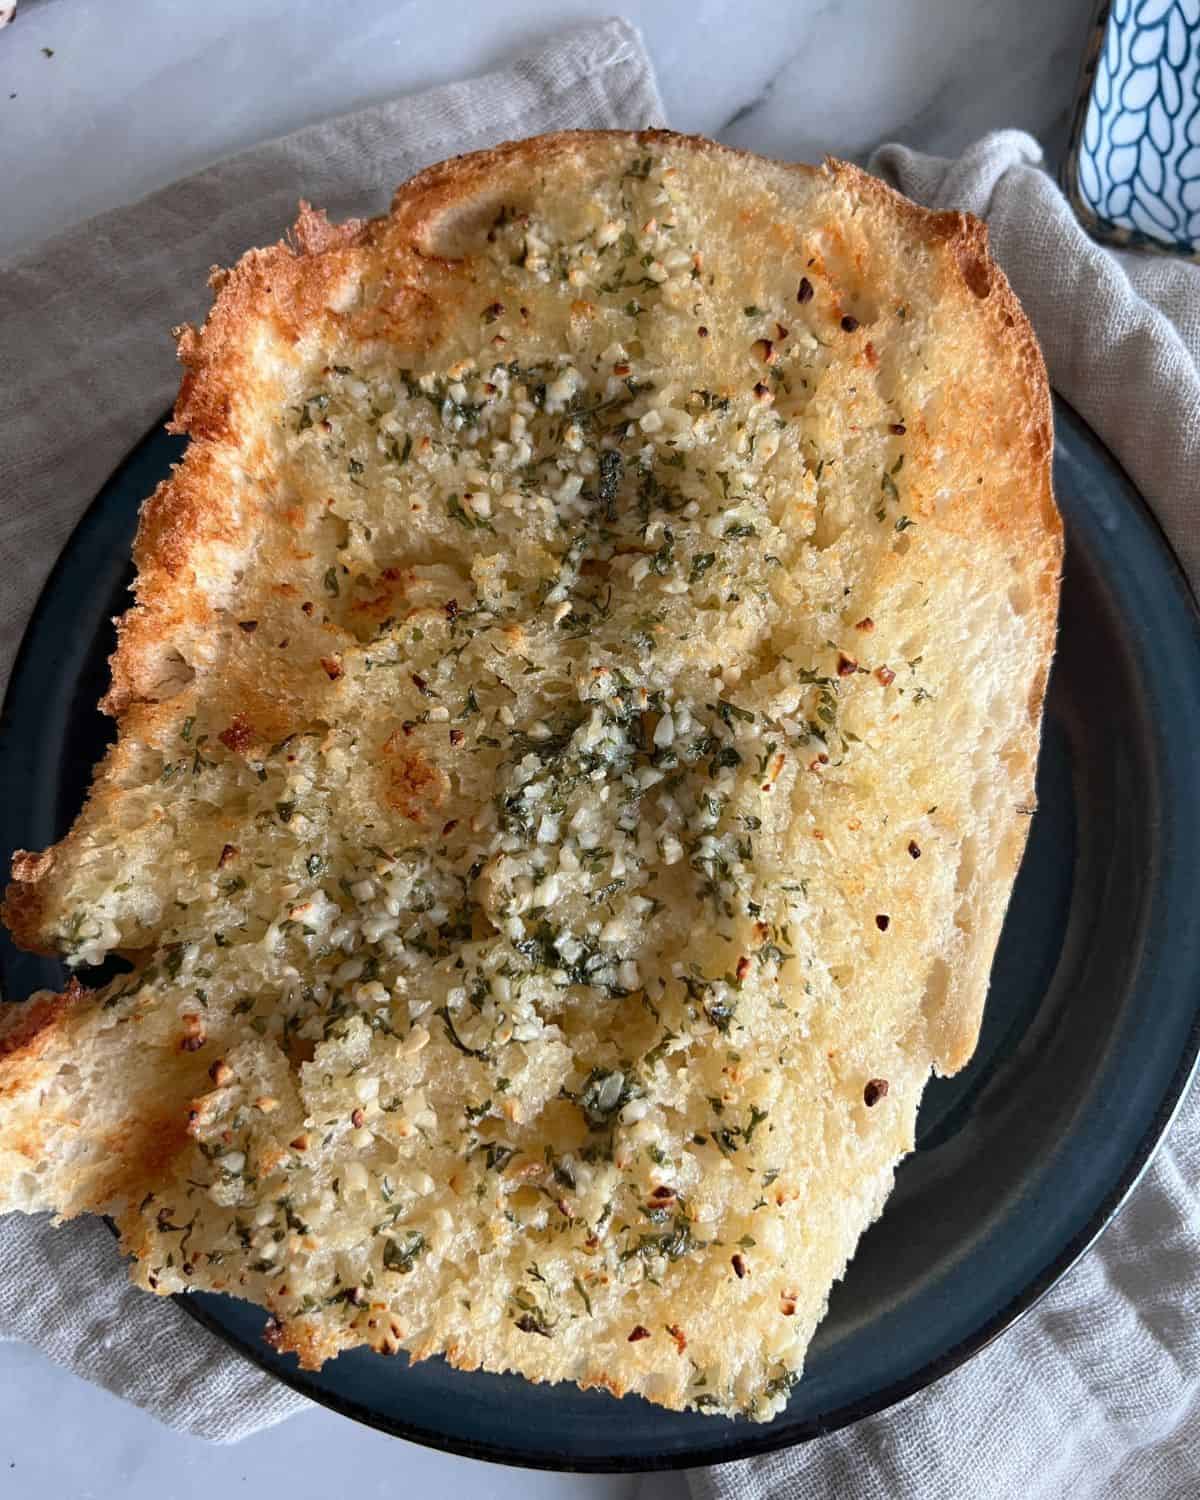 Air fryer garlic bread on a blue plate. 